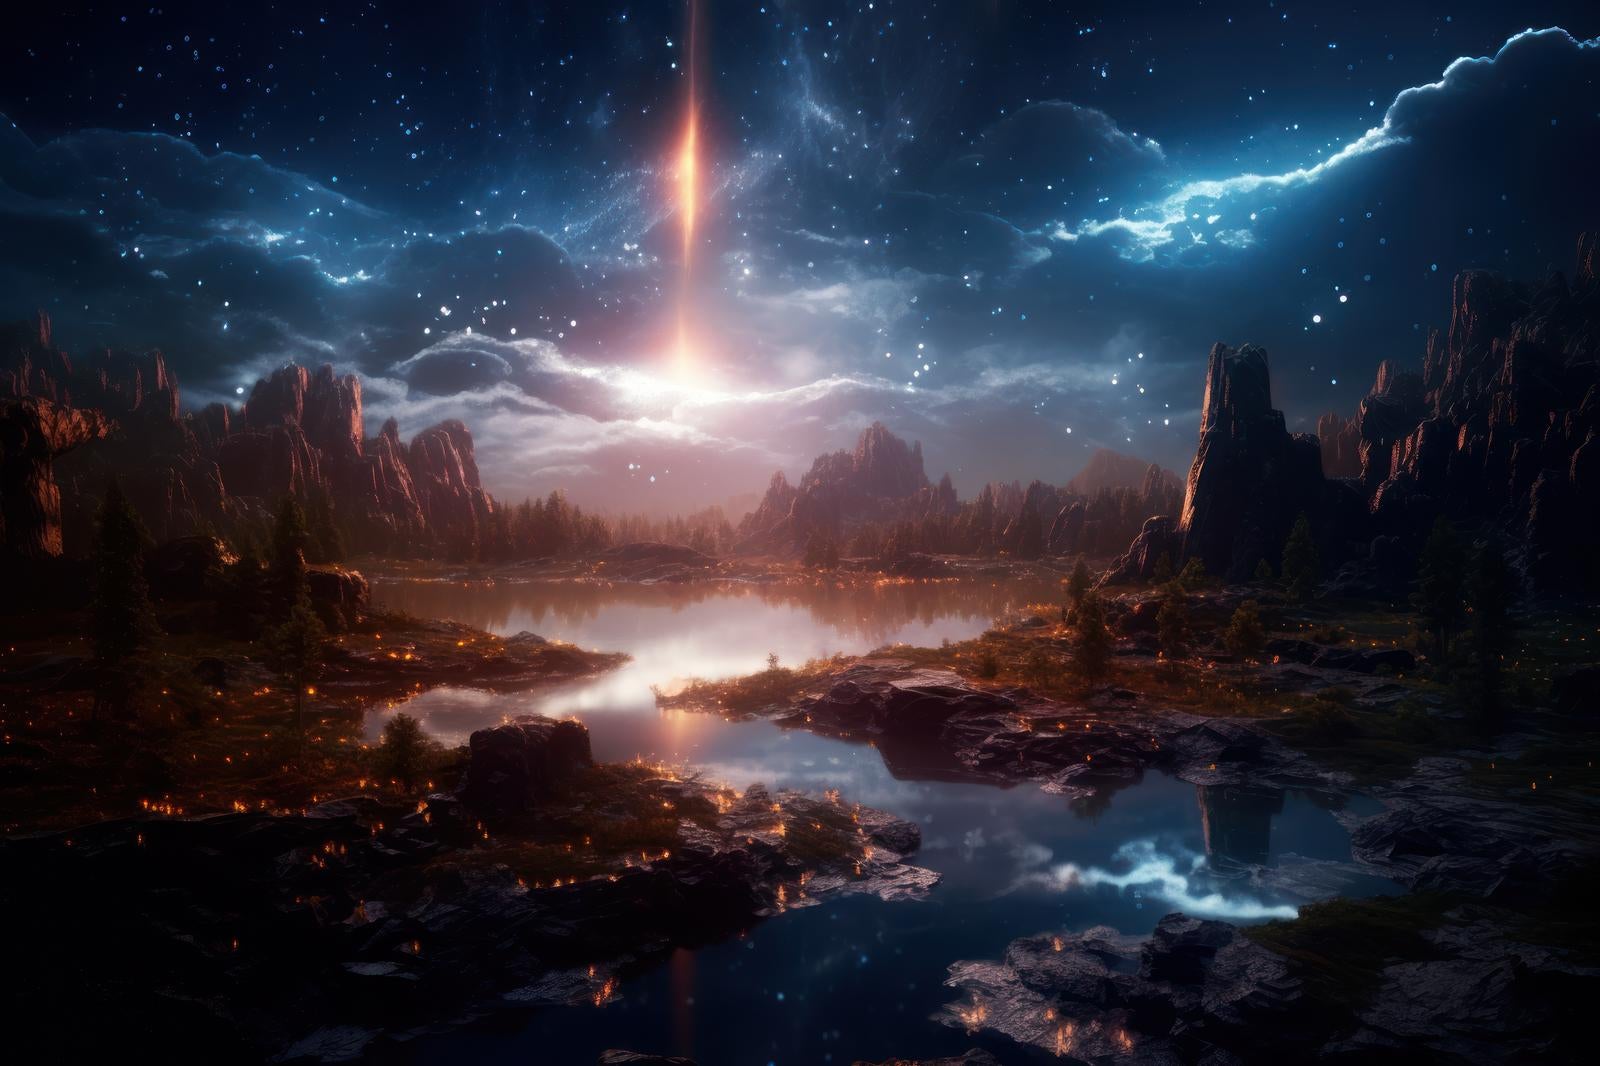 「惑星と魔法が交差するファンタジーの美しいアート」の写真